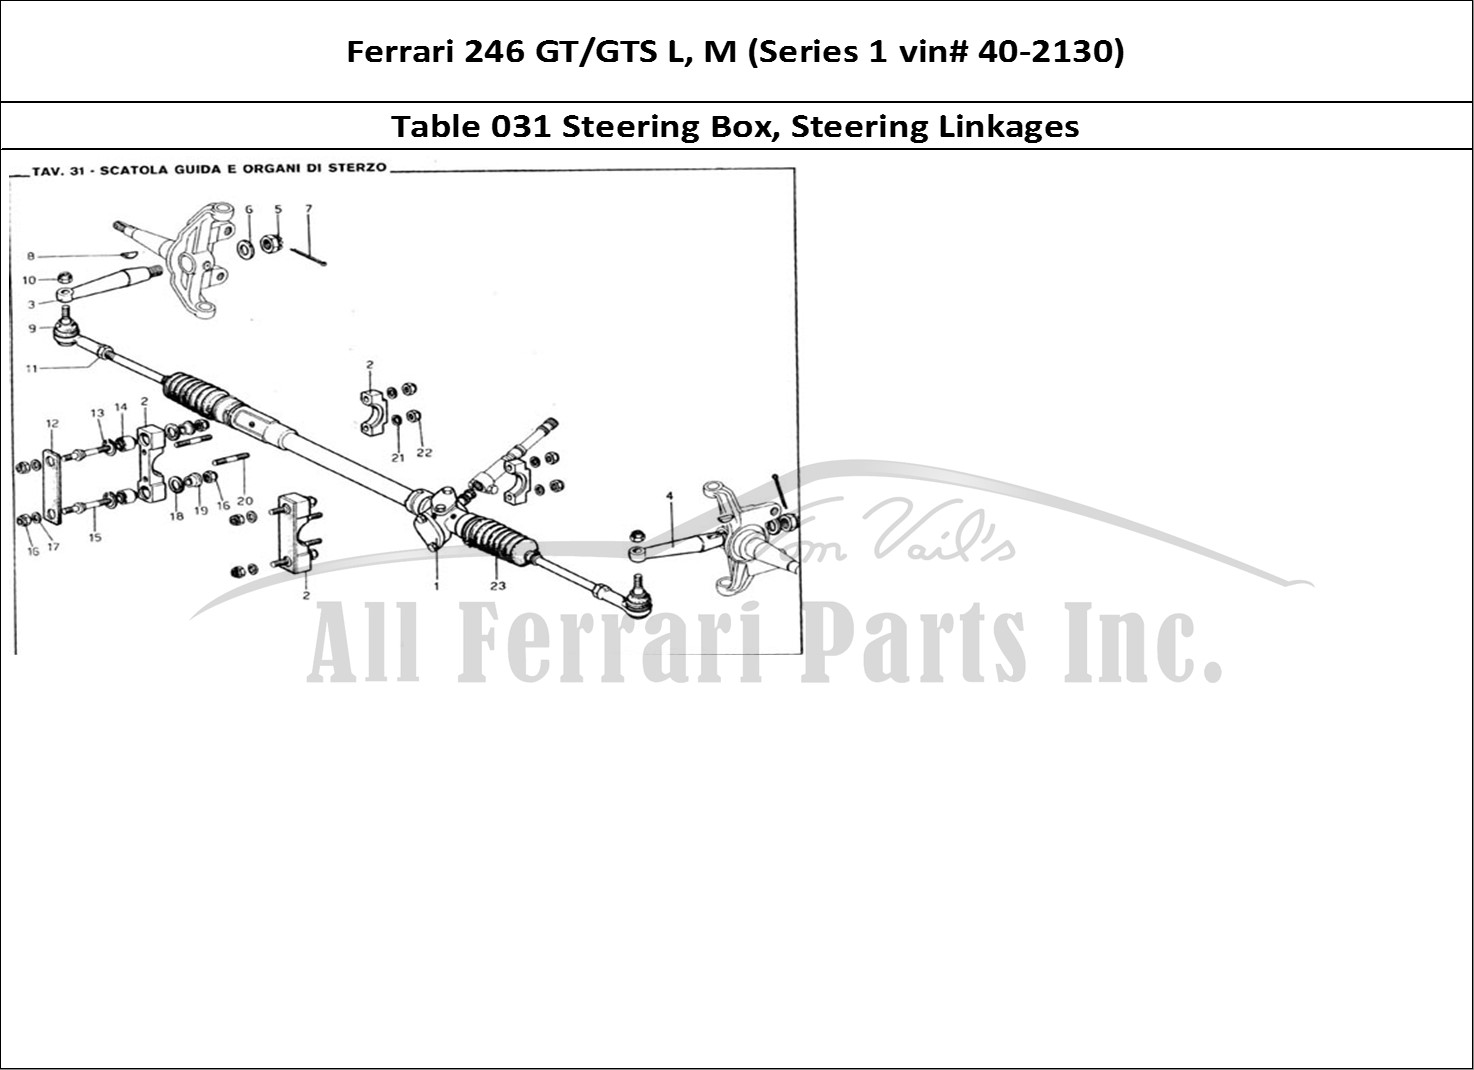 Ferrari Parts Ferrari 246 GT Series 1 Page 031 Steering Box & Steering L